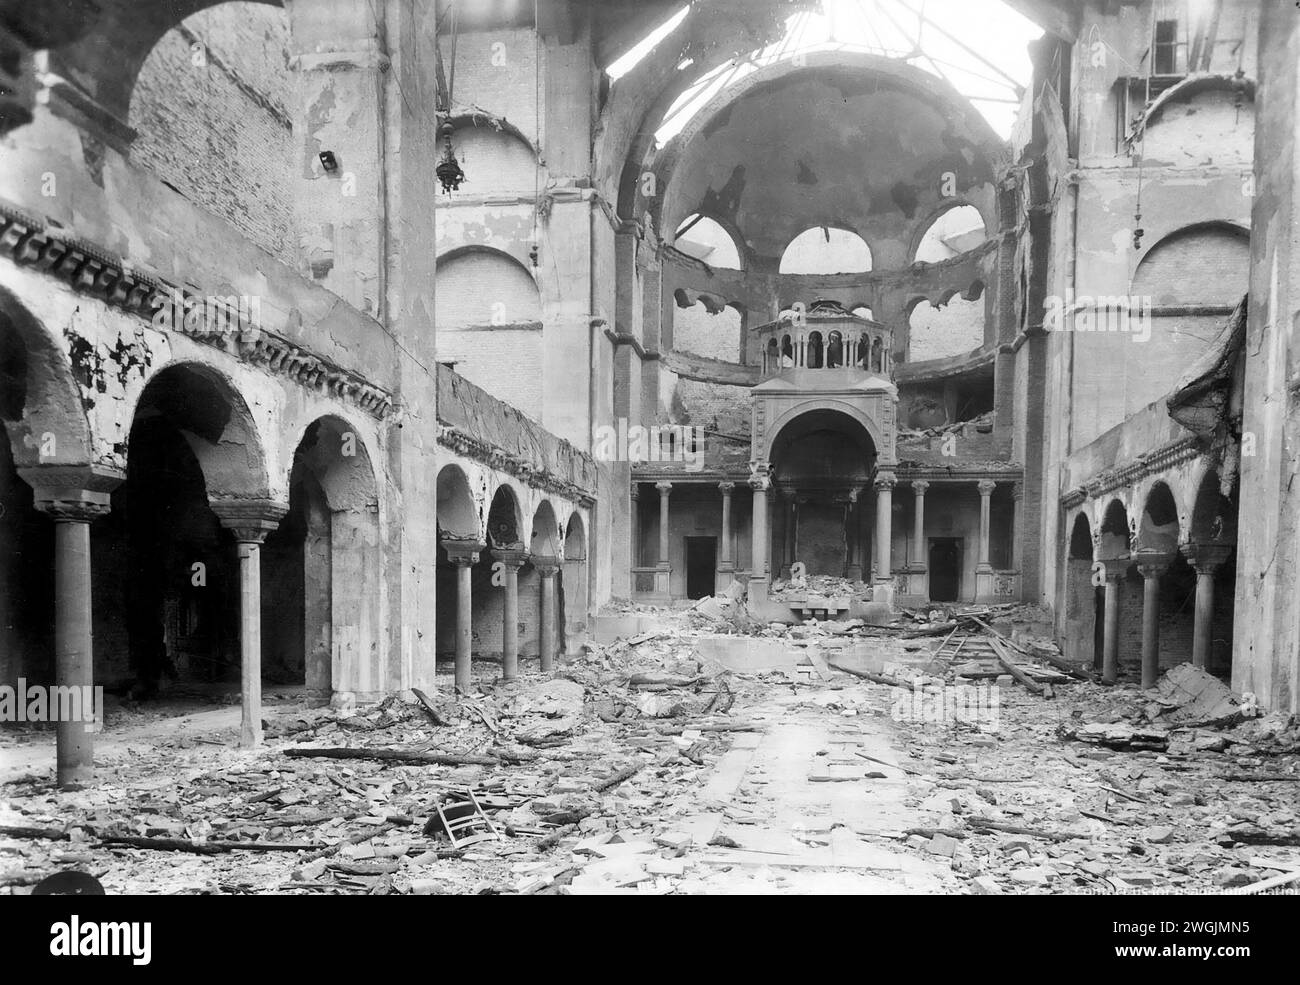 Kristallnacht. Vue intérieure de la synagogue Fasanenstrasse détruite à Berlin après sa destruction dans le pogrom de Kristallnacht les 9 et 10 novembre 1938. Banque D'Images